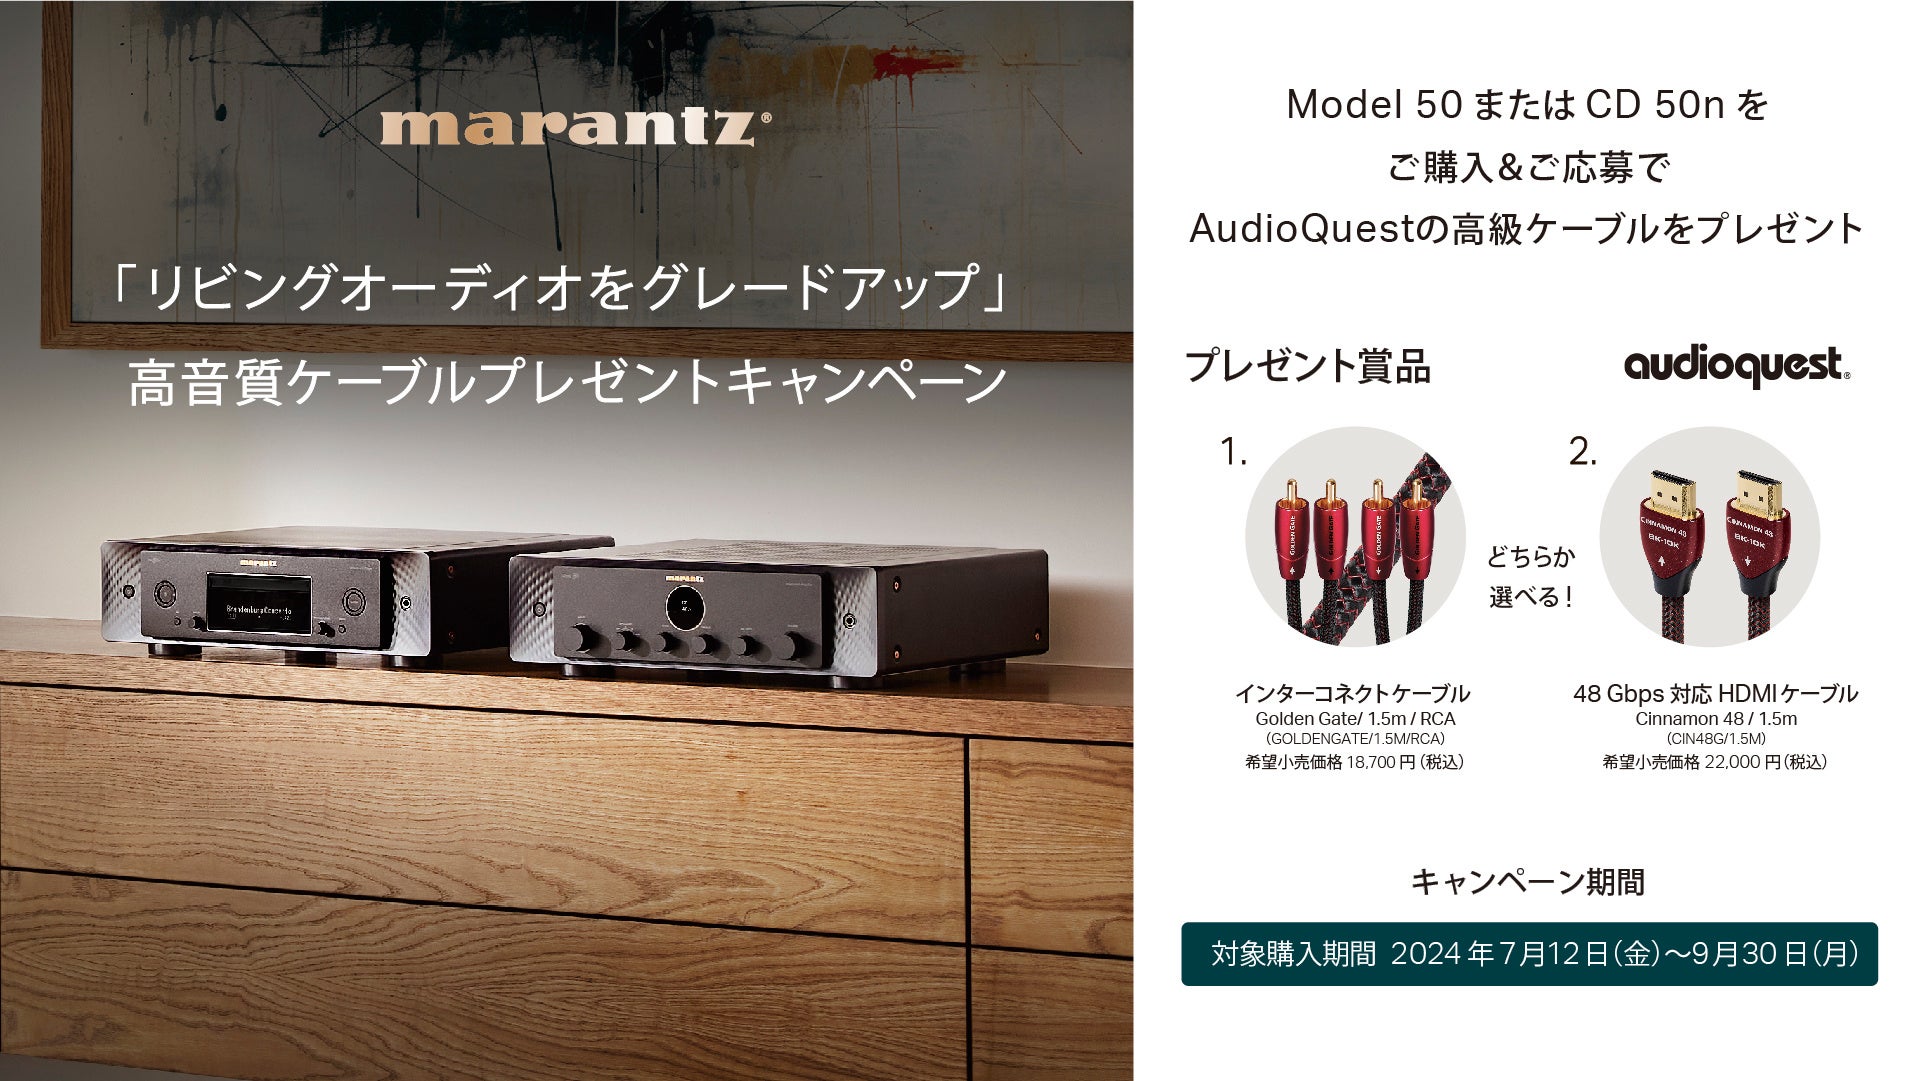 [Marantz キャンペーン情報] 「リビングオーディオをグレードアップ 高音質ケーブルプレゼントキャンペーン」実施のお知らせ